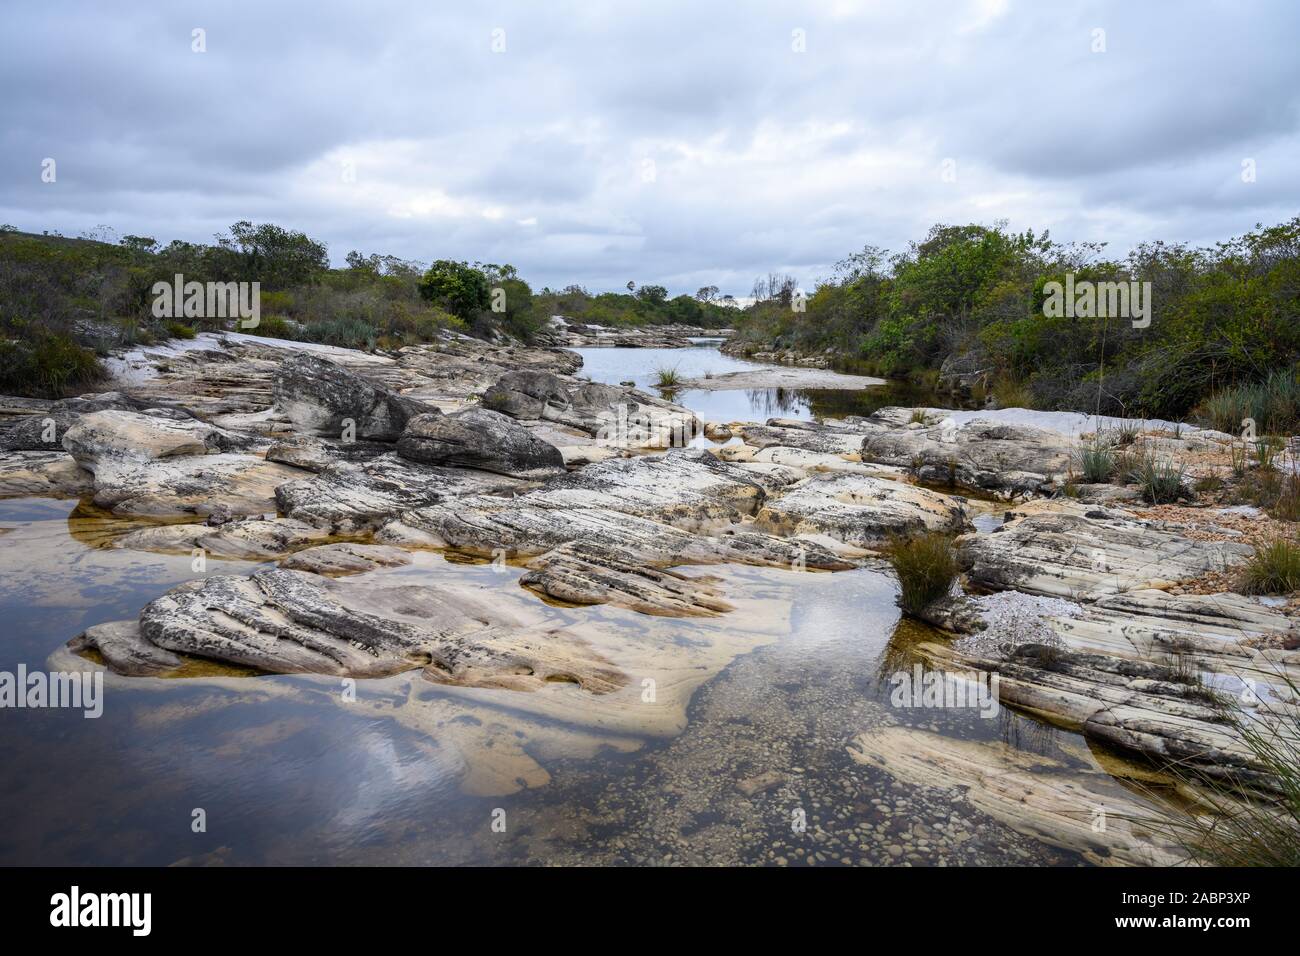 Aufschlüsse von Präkambrischen Sandstein zeigen deutliche Betten. Botumirim, Minas Gerais, Brasilien. Stockfoto